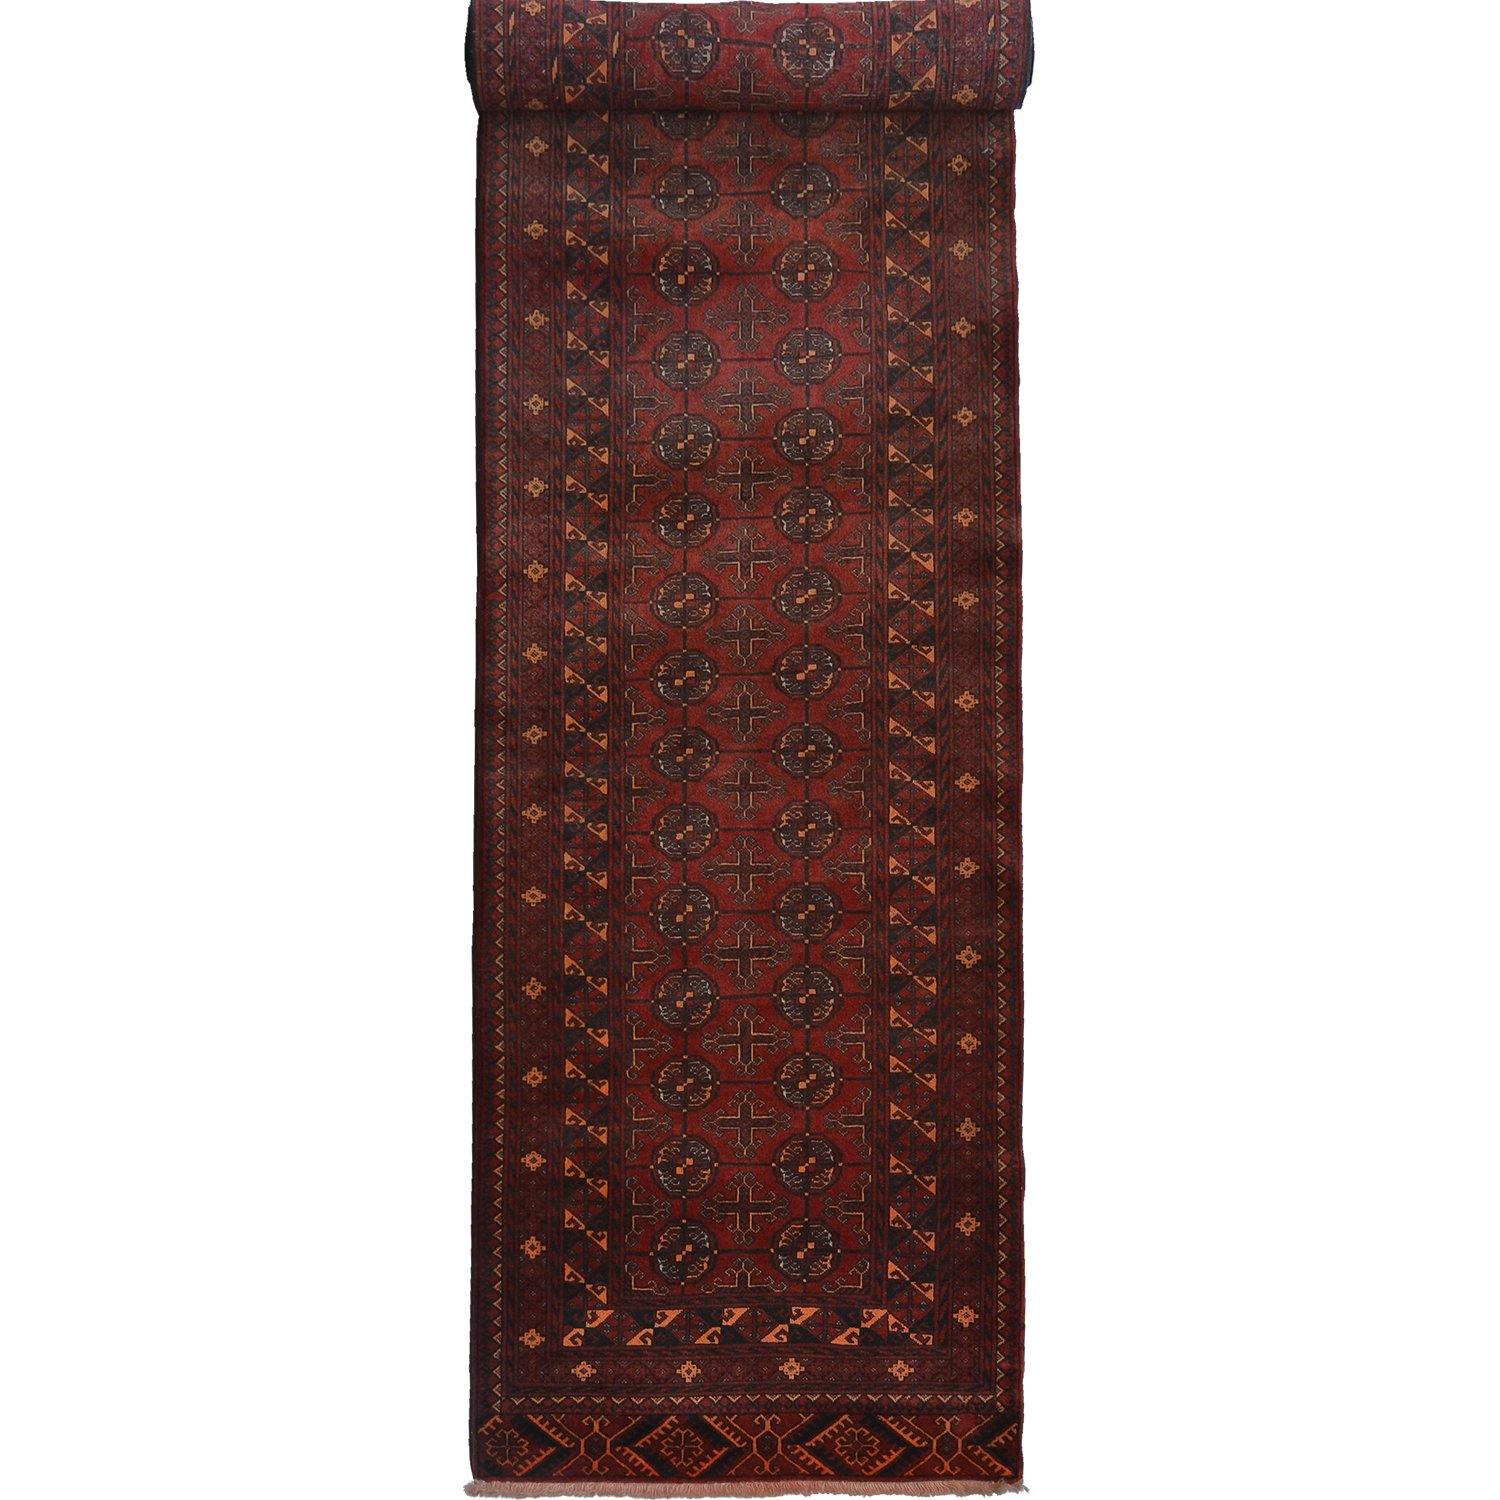 Fine Hand-knotted Vintage Wool Turkmen Red Hallway Runner 79cm x 375cm